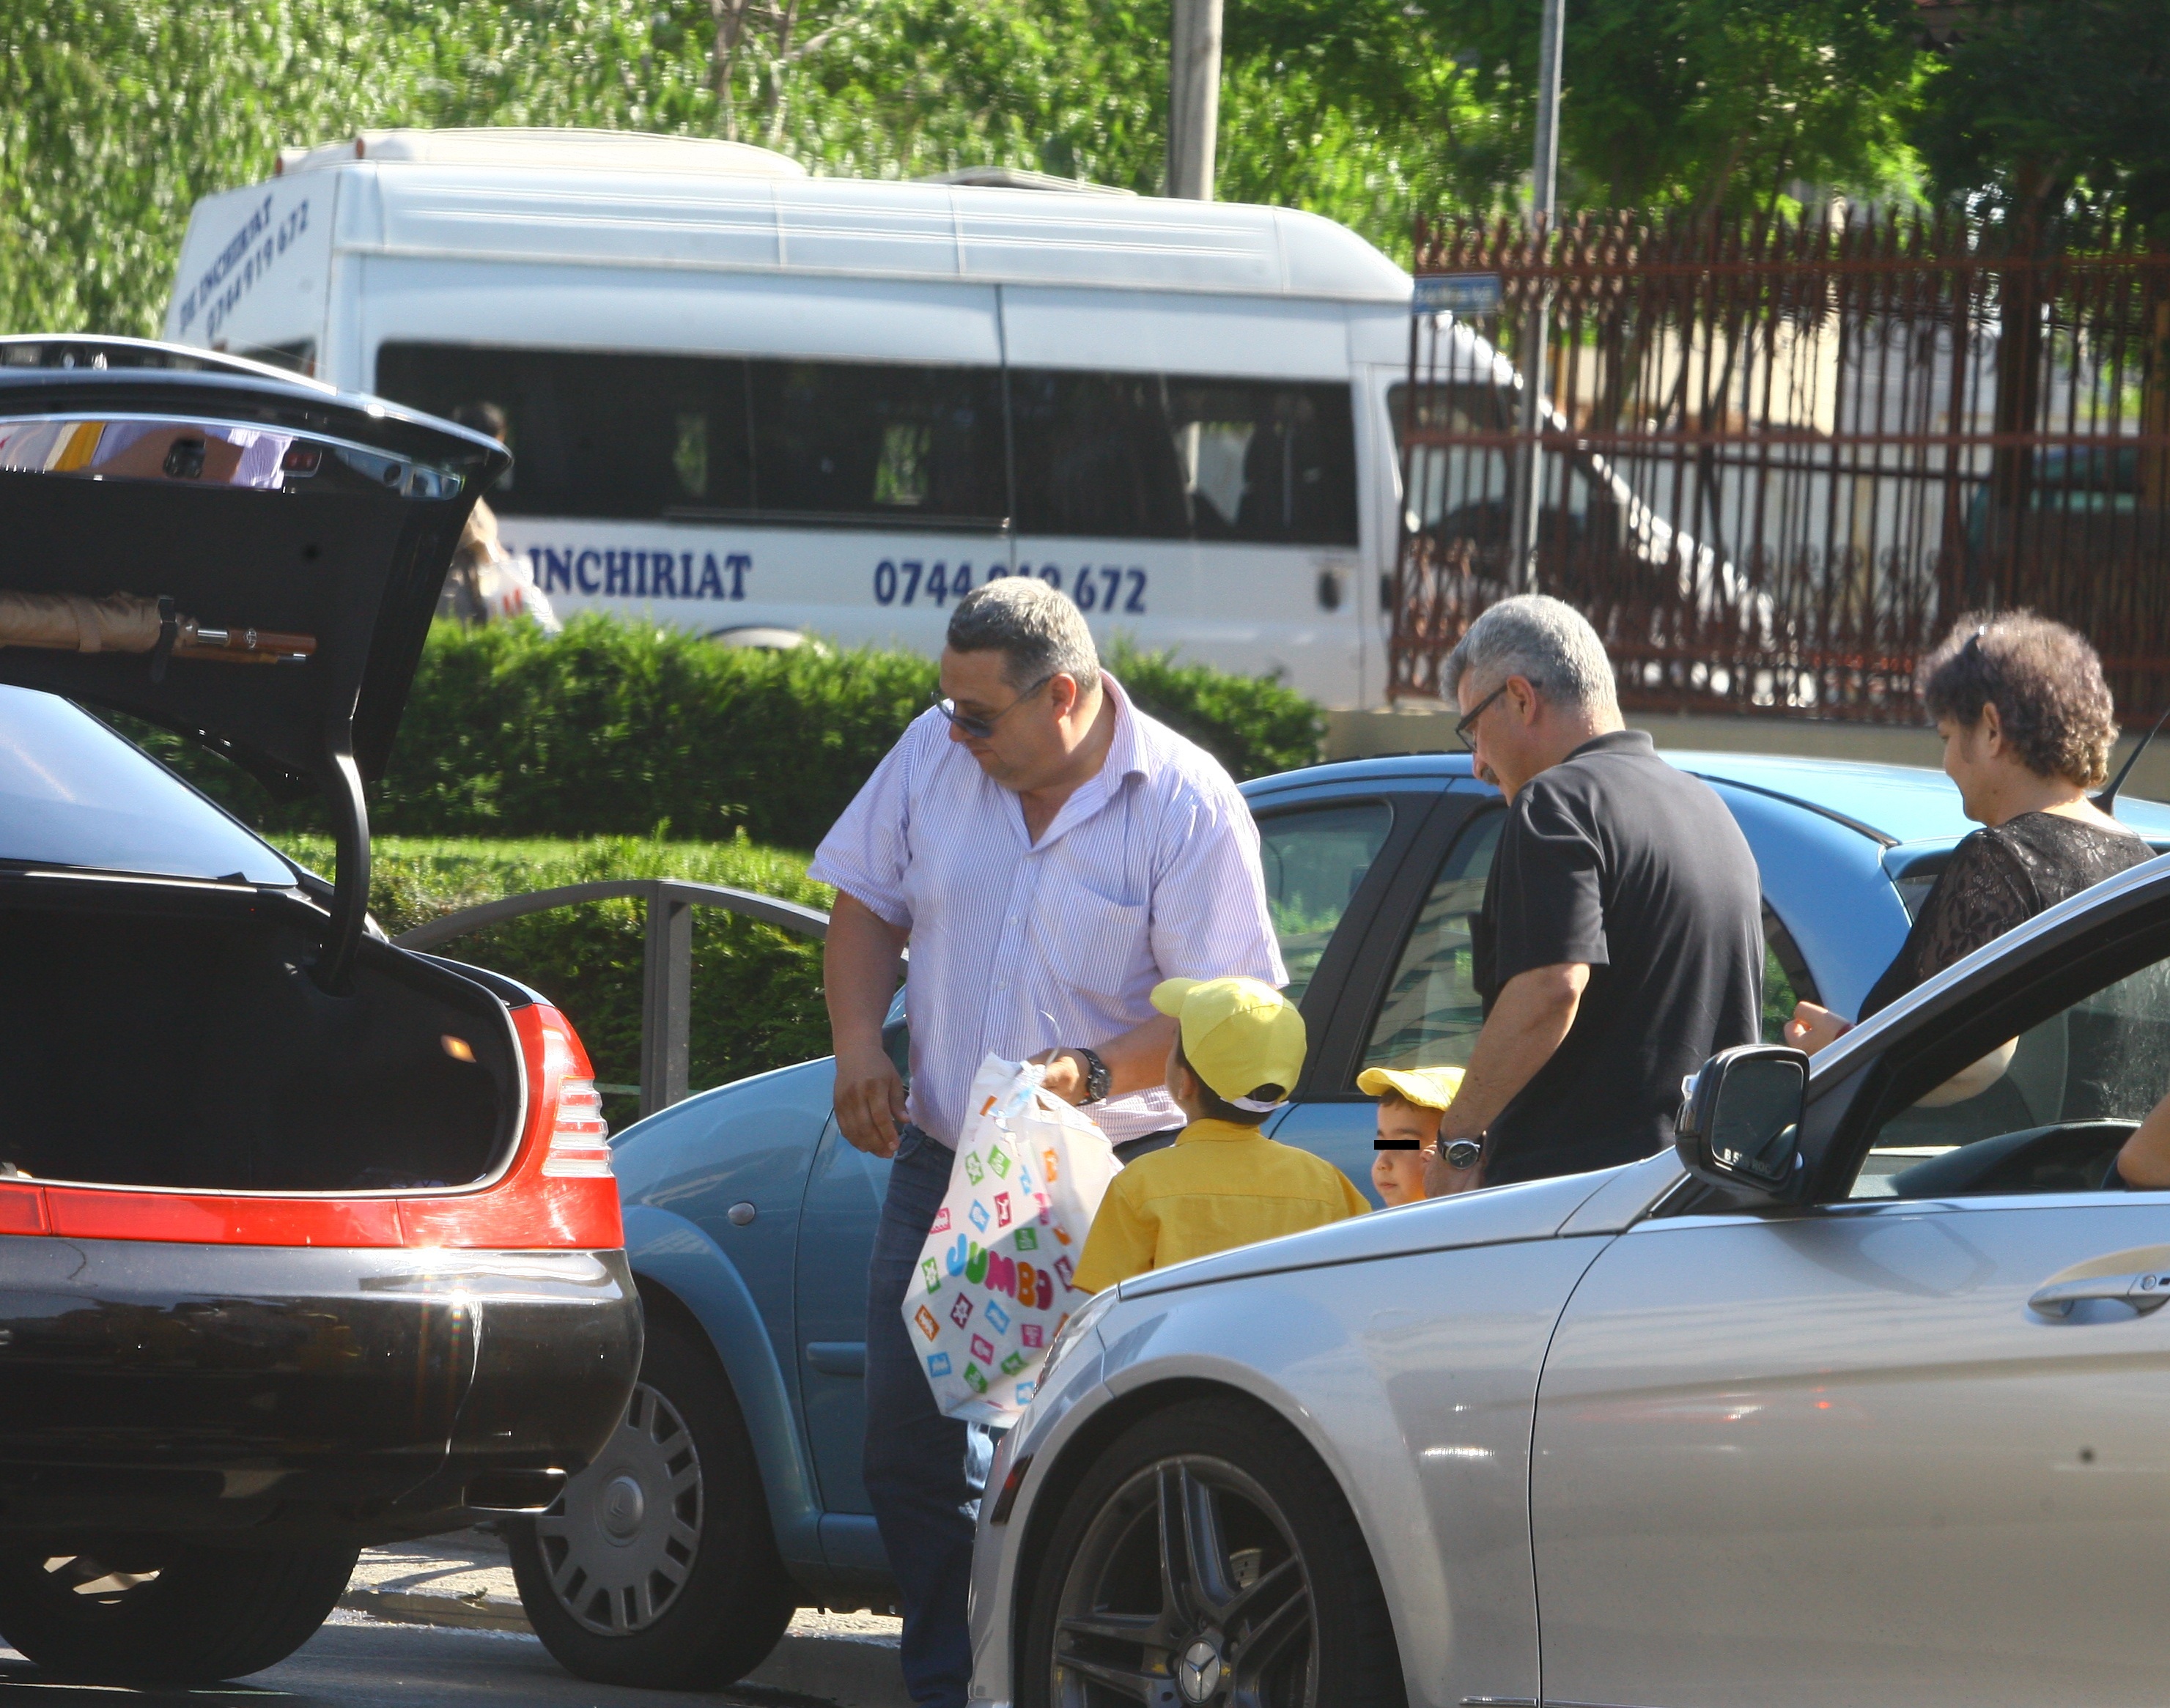 Soferul lui Silviu Prigoana pune bagajele in portbagajul limuzinei